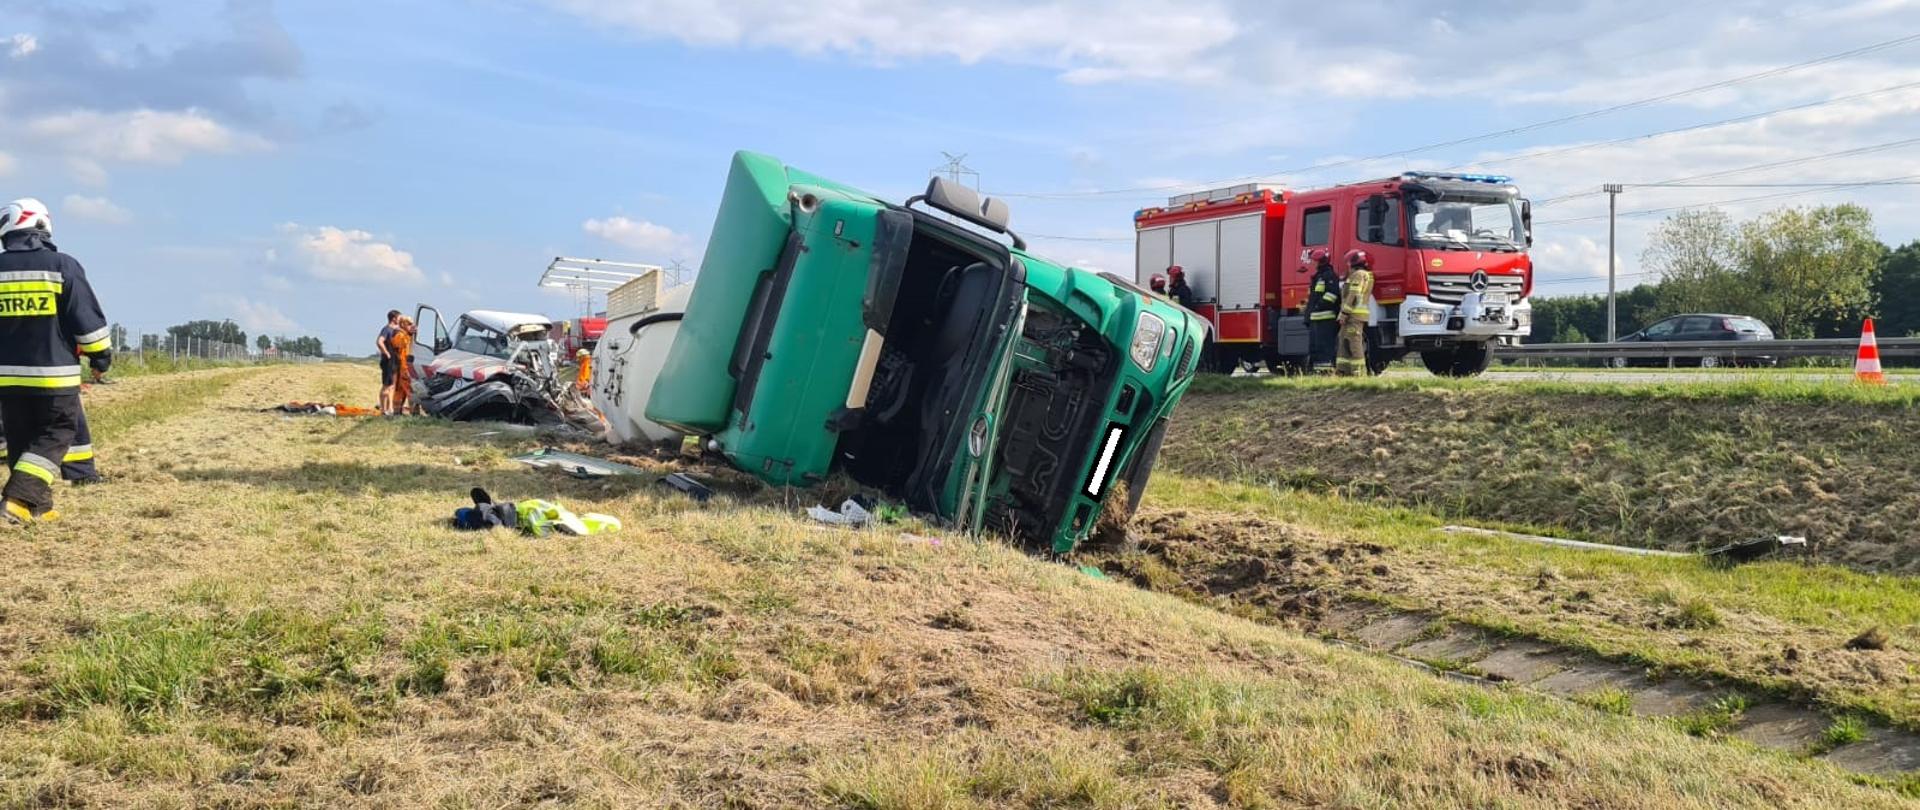 Wypadek z udziałem samochodu ciężarowego na autostradzie A4 w pobliżu miejscowości Wierzbnik